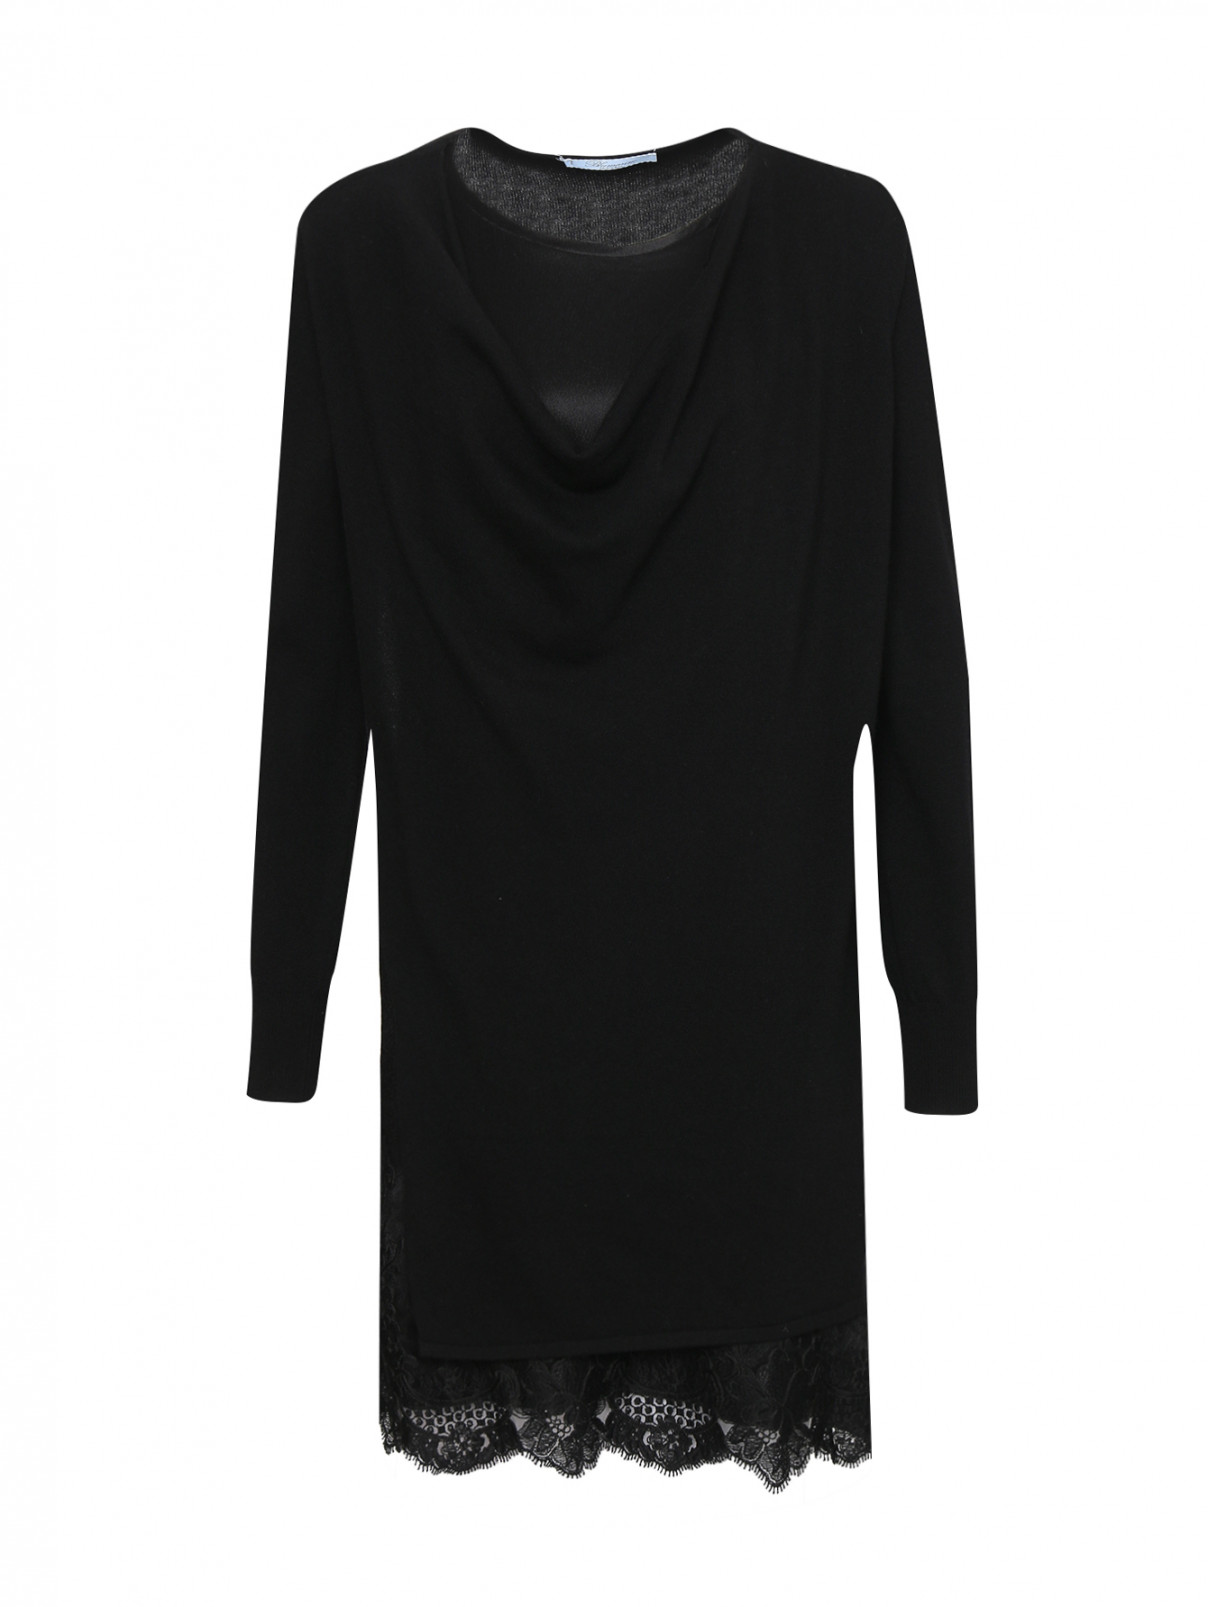 Комбинированное платье с кружевной отделкой Blumarine  –  Общий вид  – Цвет:  Черный